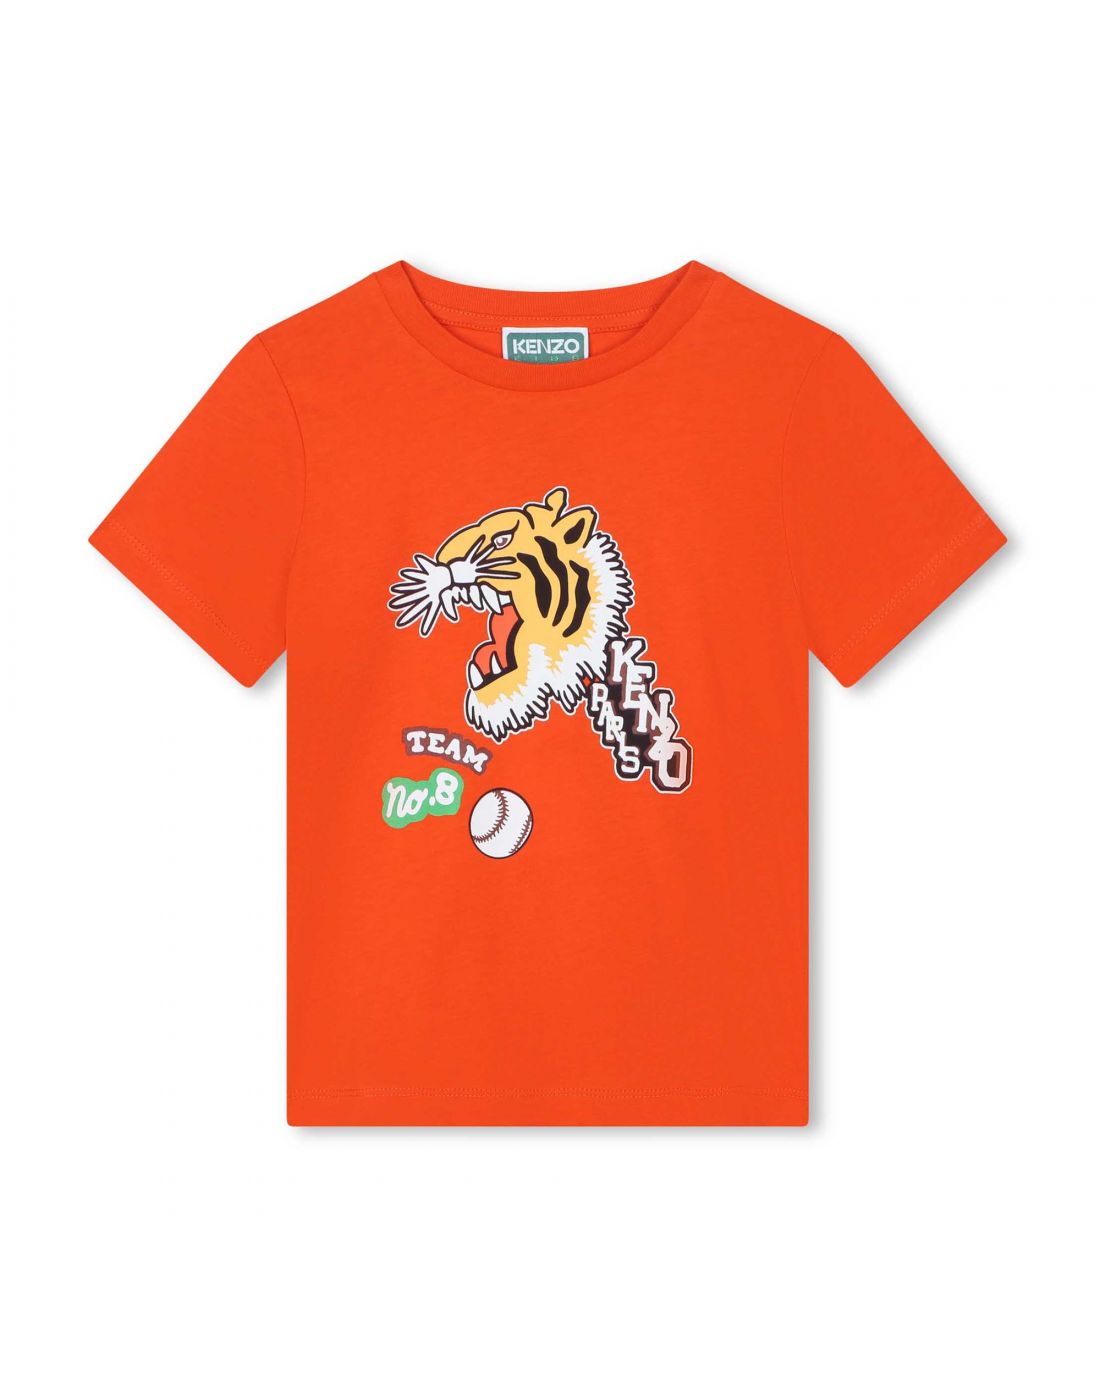 Παιδική Μπλούζα T-Shirt ΚΜ Kenzo, Kenzo, 23262267 | LapinKids.com | LAPIN  KIDS